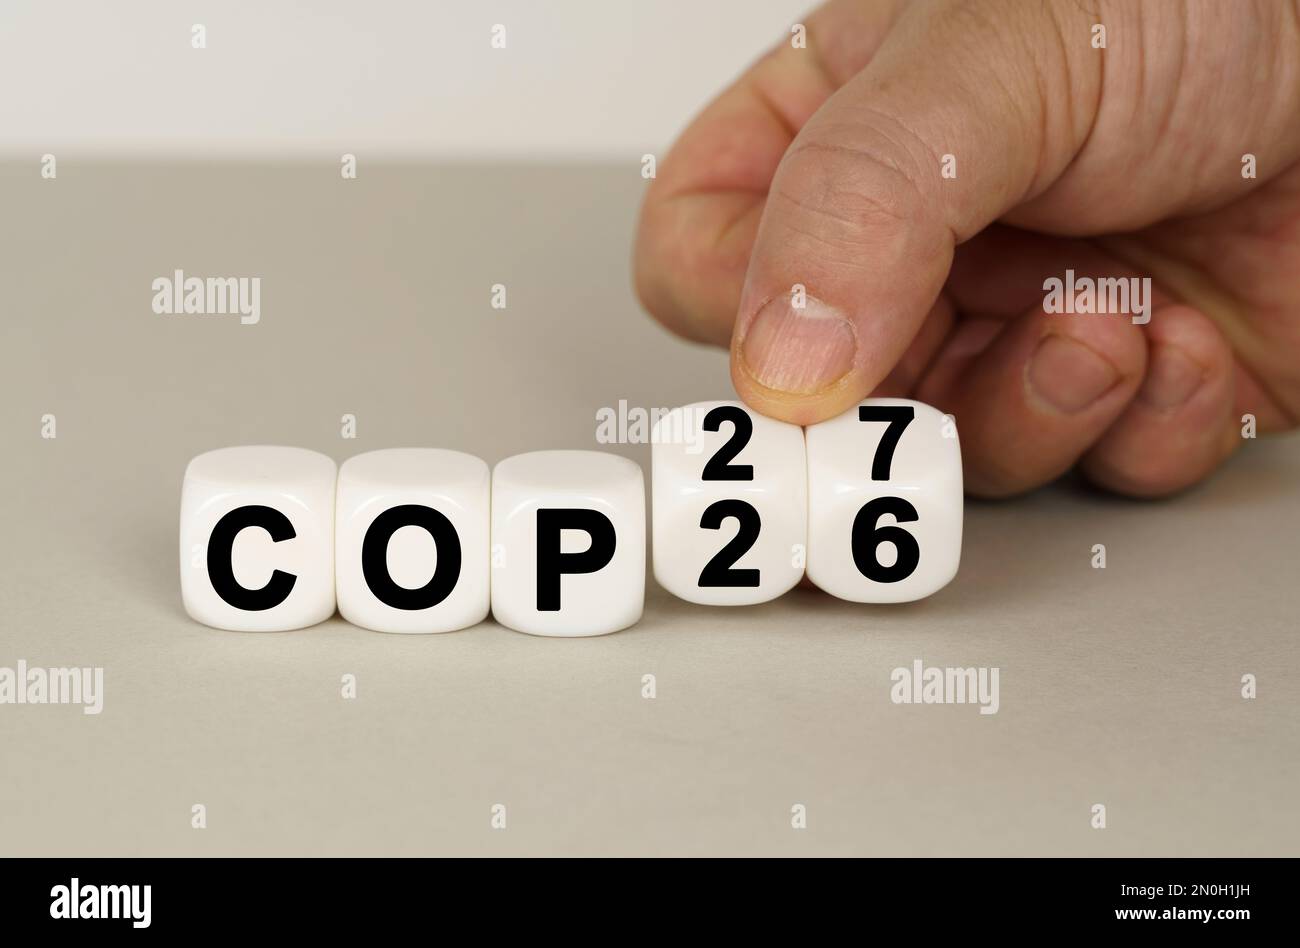 Auf einer grauen Oberfläche befinden sich weiße Würfel mit der Aufschrift COP26 bis COP27. Zwei Würfel in der Hand. Technologiekonzept Stockfoto